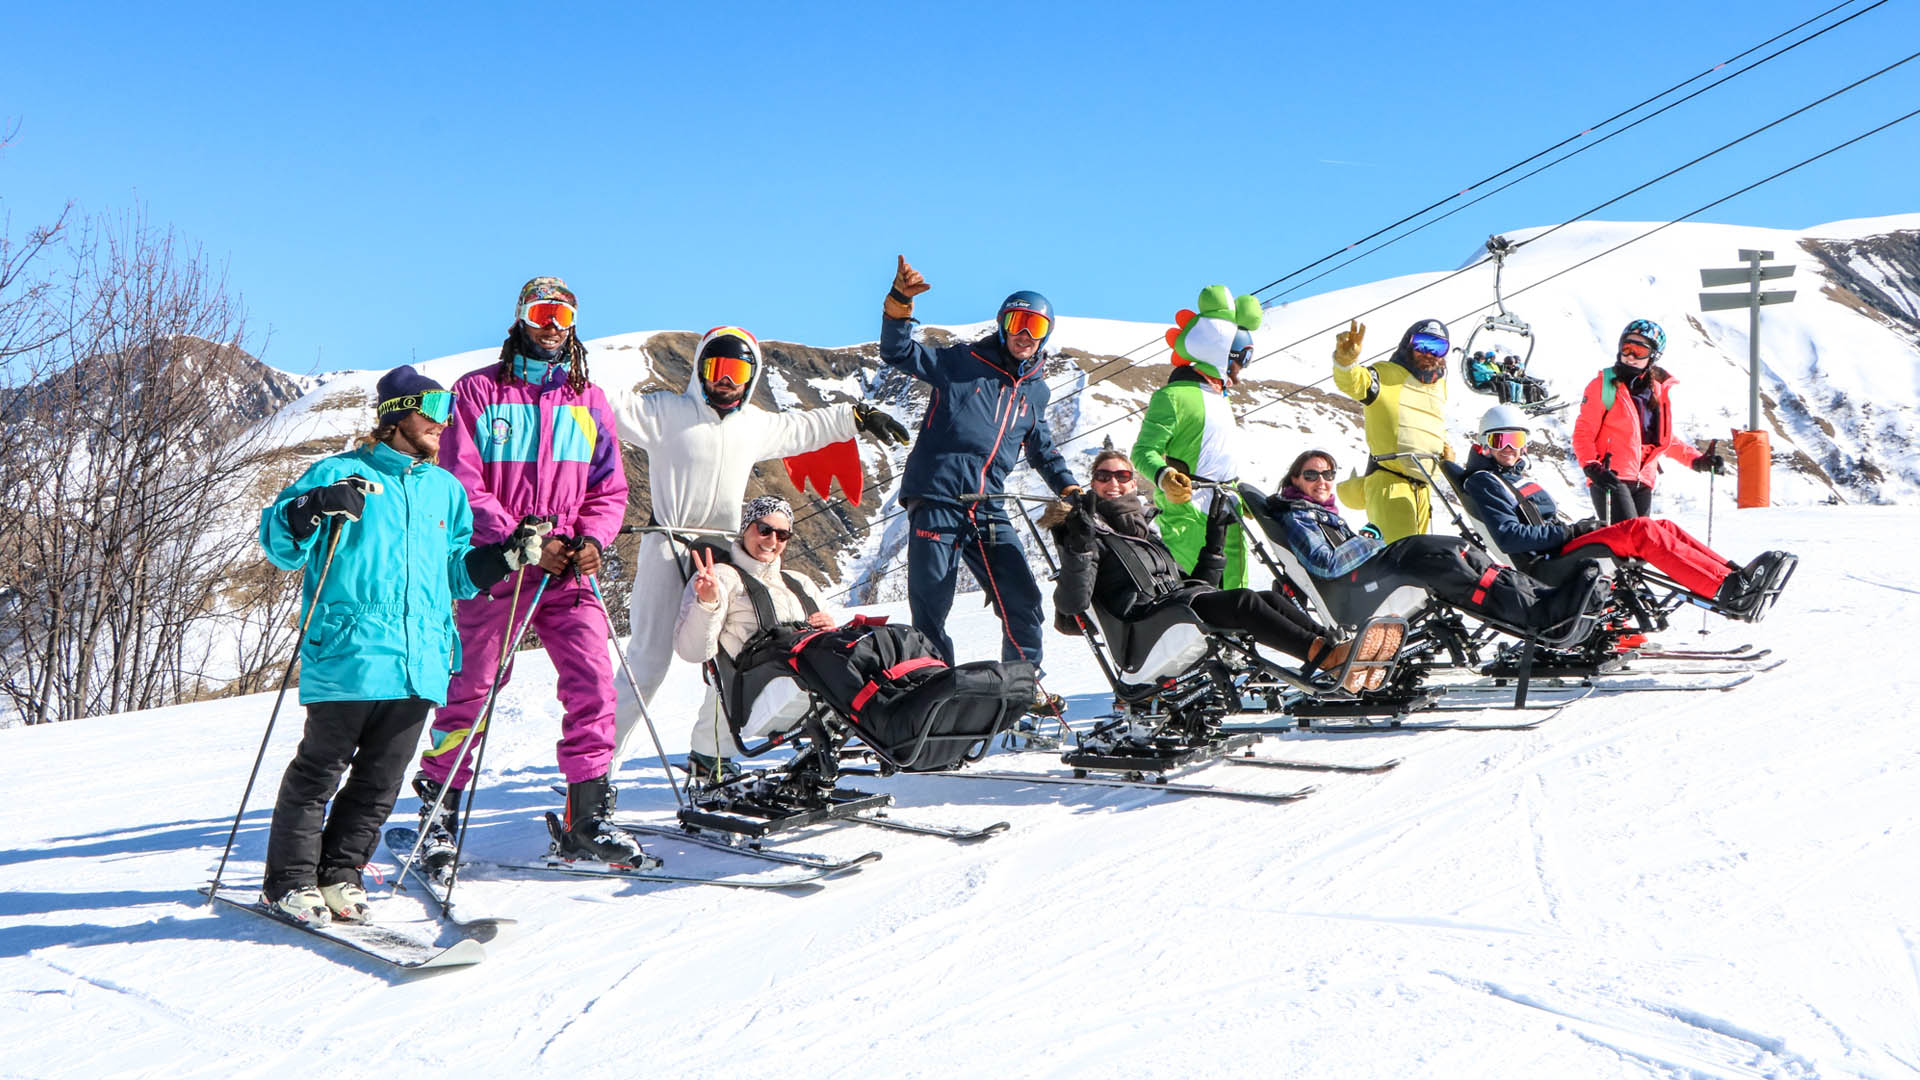 Vacanciers en situation de handicap moteur en train de faire du ski assis lors d'un séjour adapté hiver à la montagne avec Anaé vacances